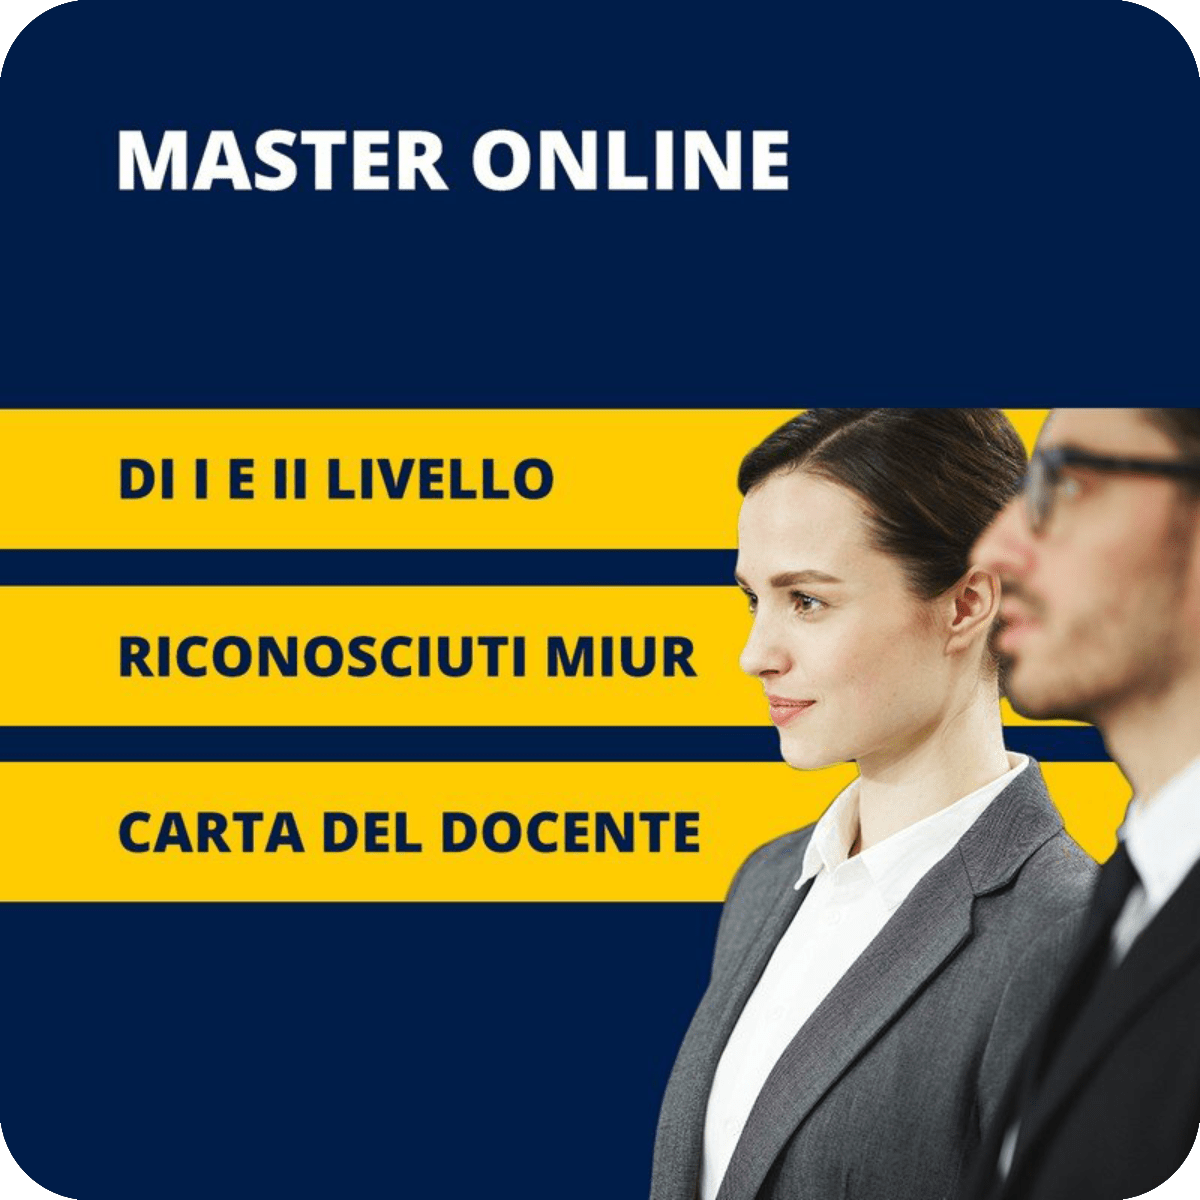 Master online